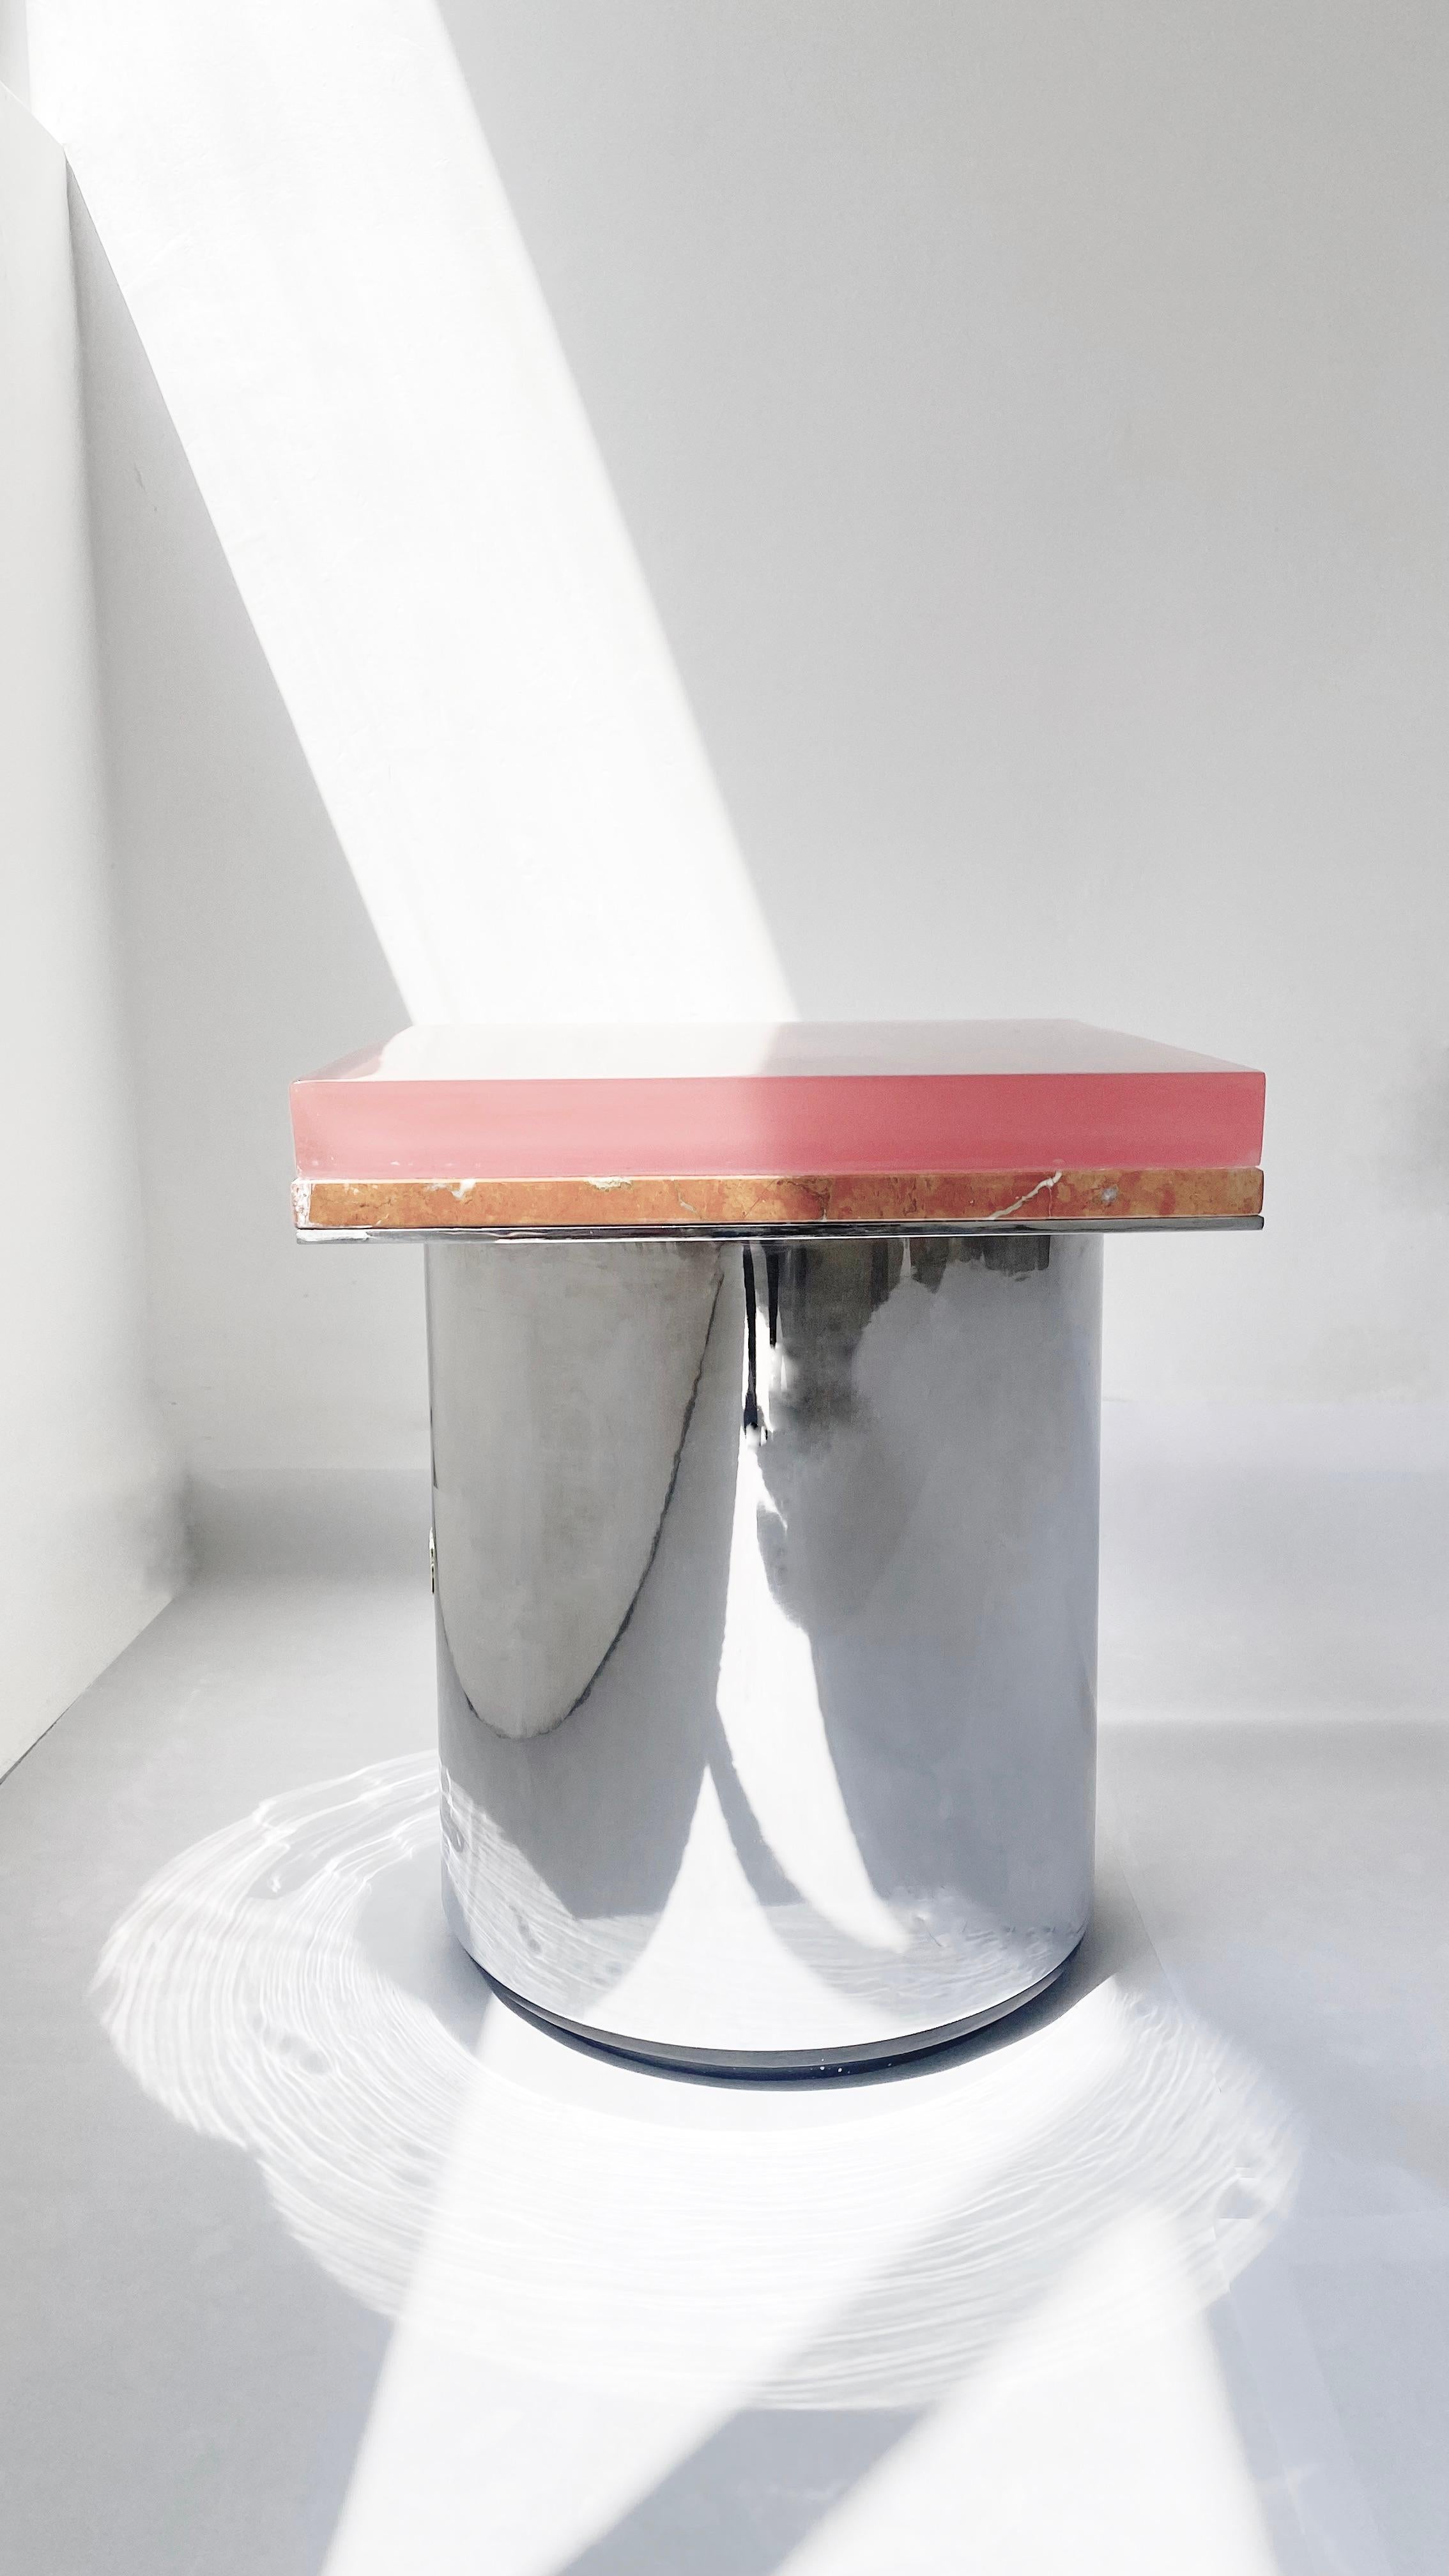 Coutr Table Marcel, tube en métal résiné et chromé.